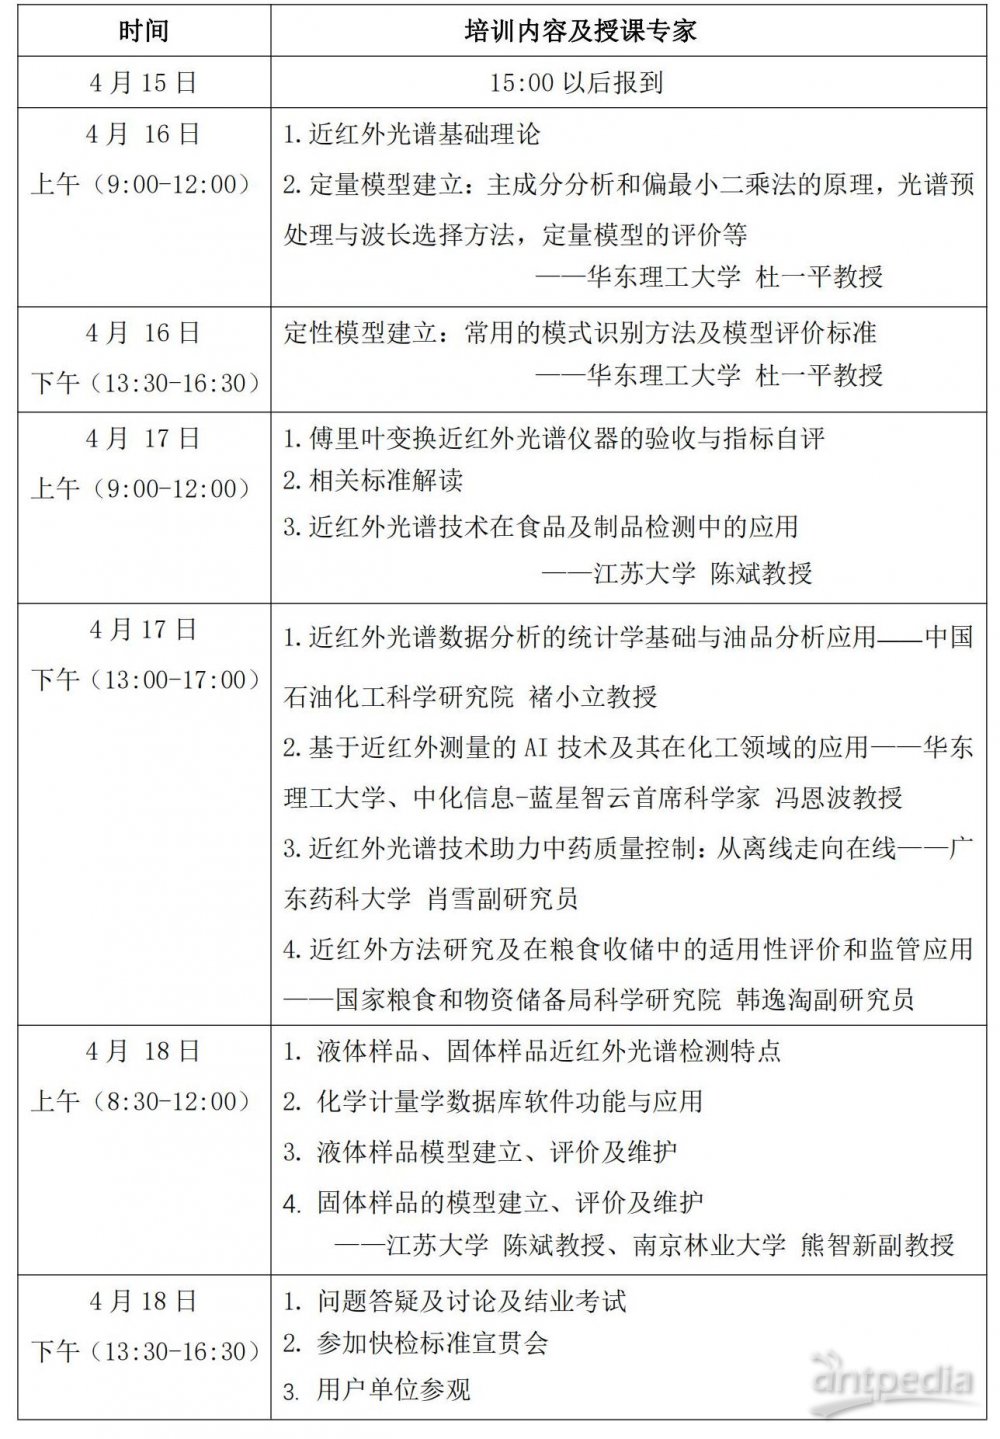 第二轮通知-第三期近红外光谱技术培训文件-广东惠州_20240312134520_01.jpg